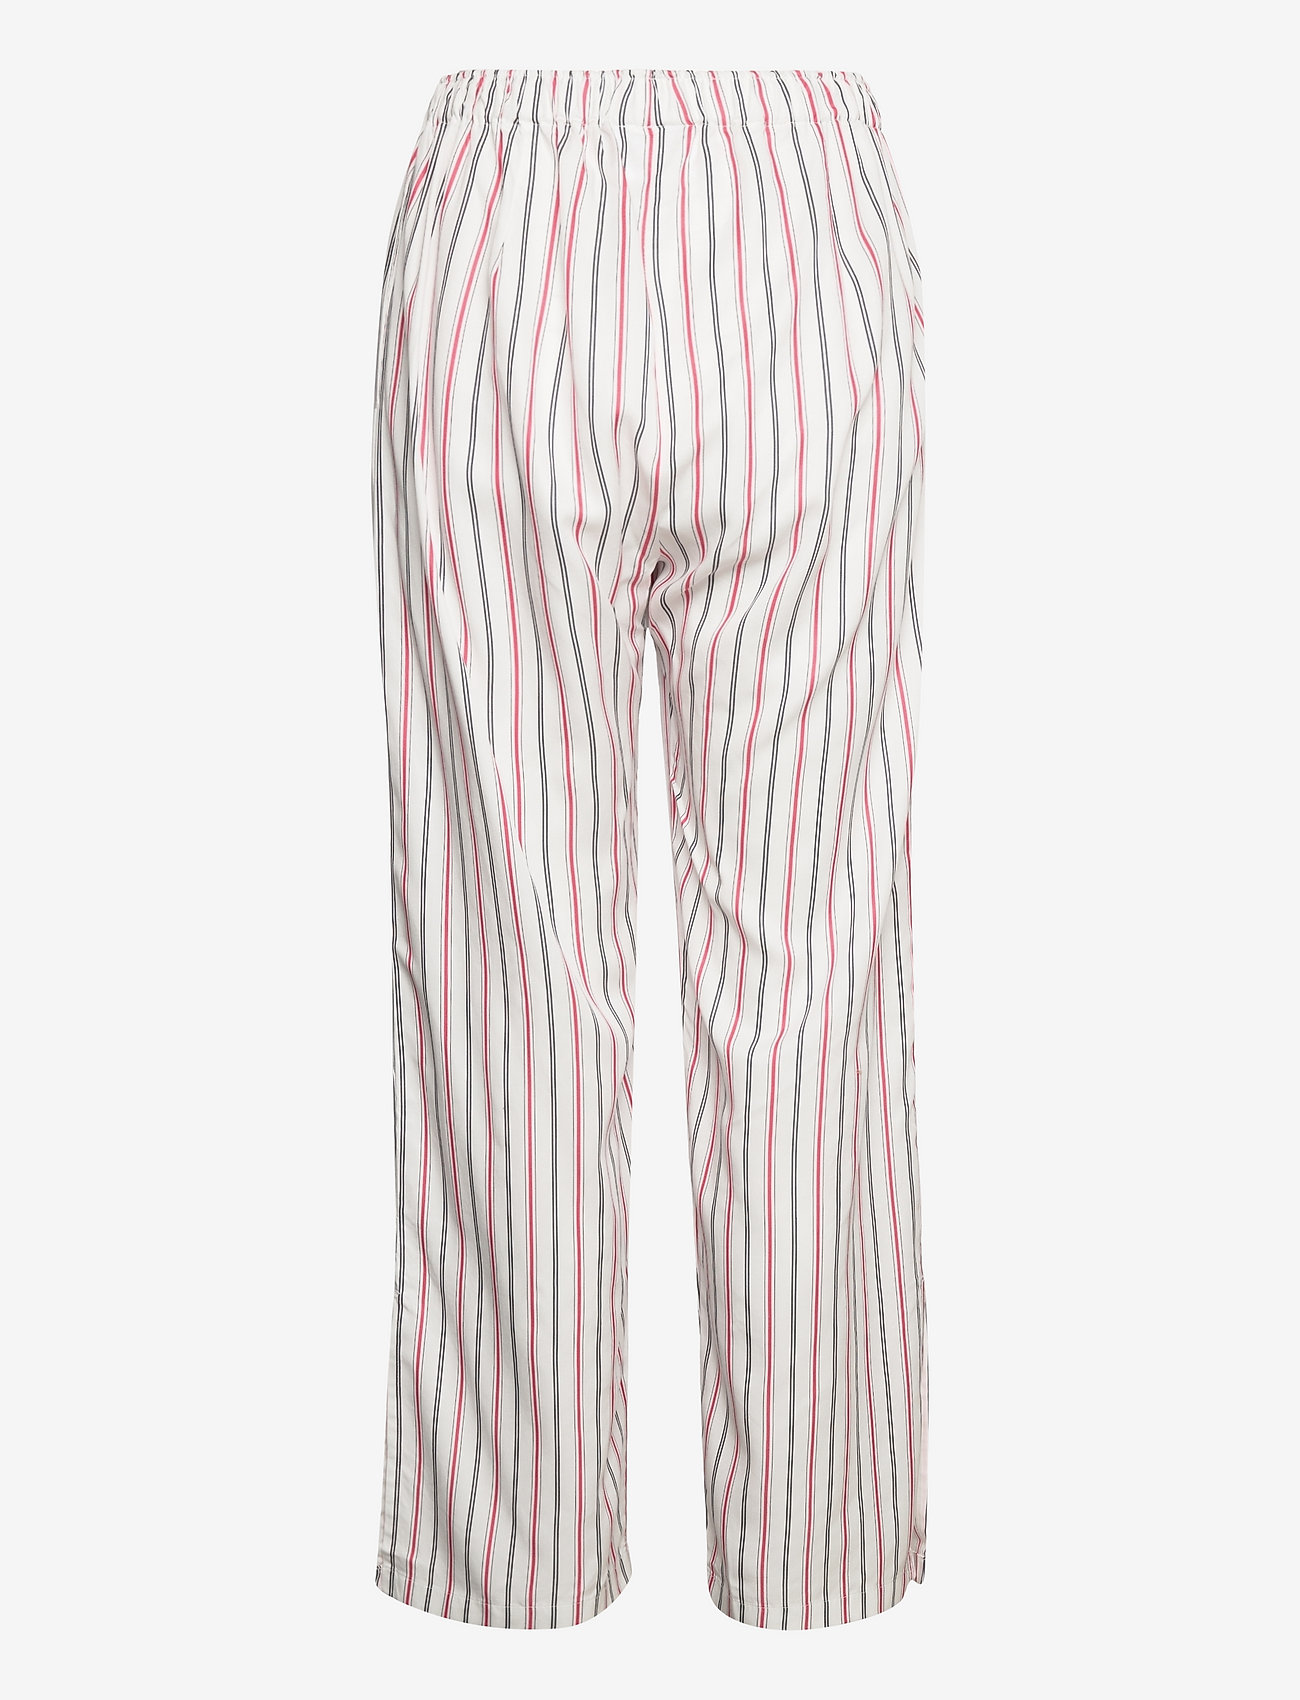 Soulland - Ciara pants - raka byxor - white/red stripes - 1